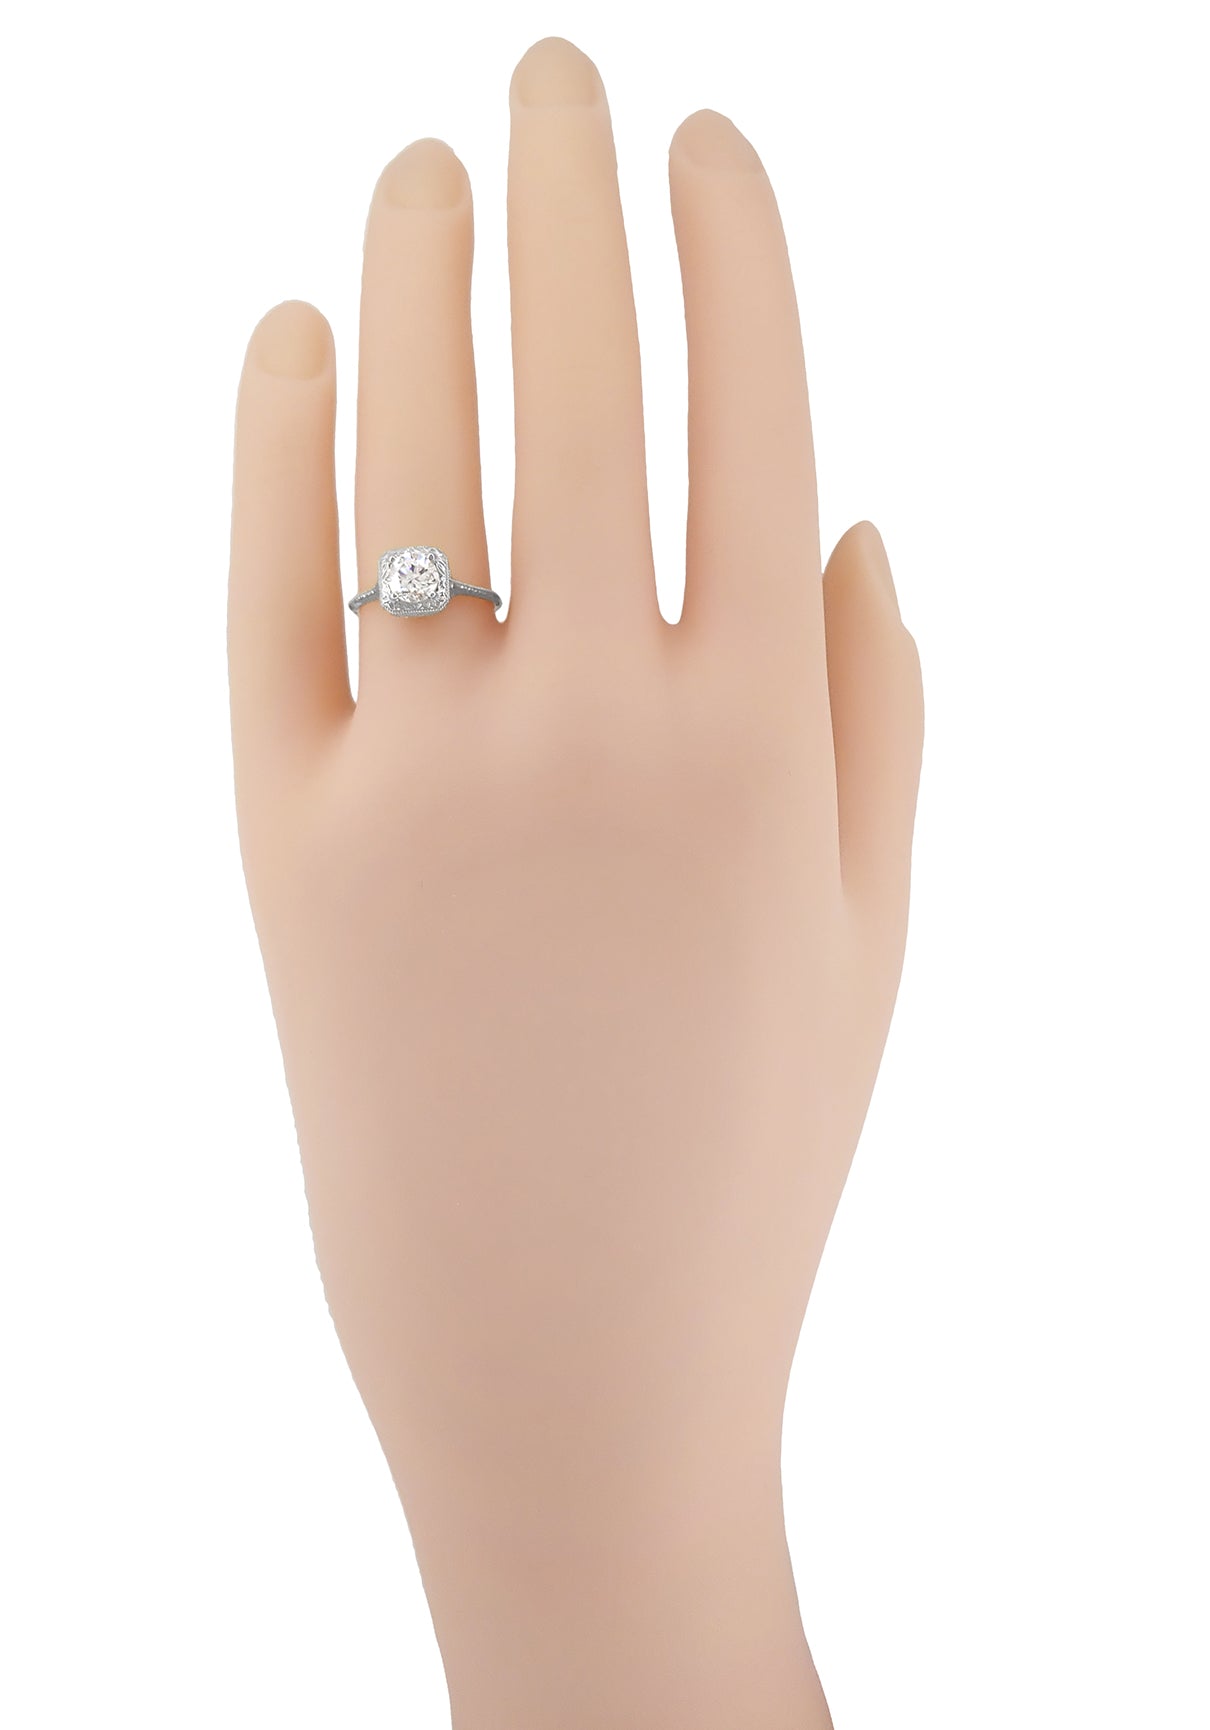 Filigree Scrolls 3/4 Carat Diamond Engagement Ring in 14 Karat White Gold - Item: R183W1D-LC - Image: 6